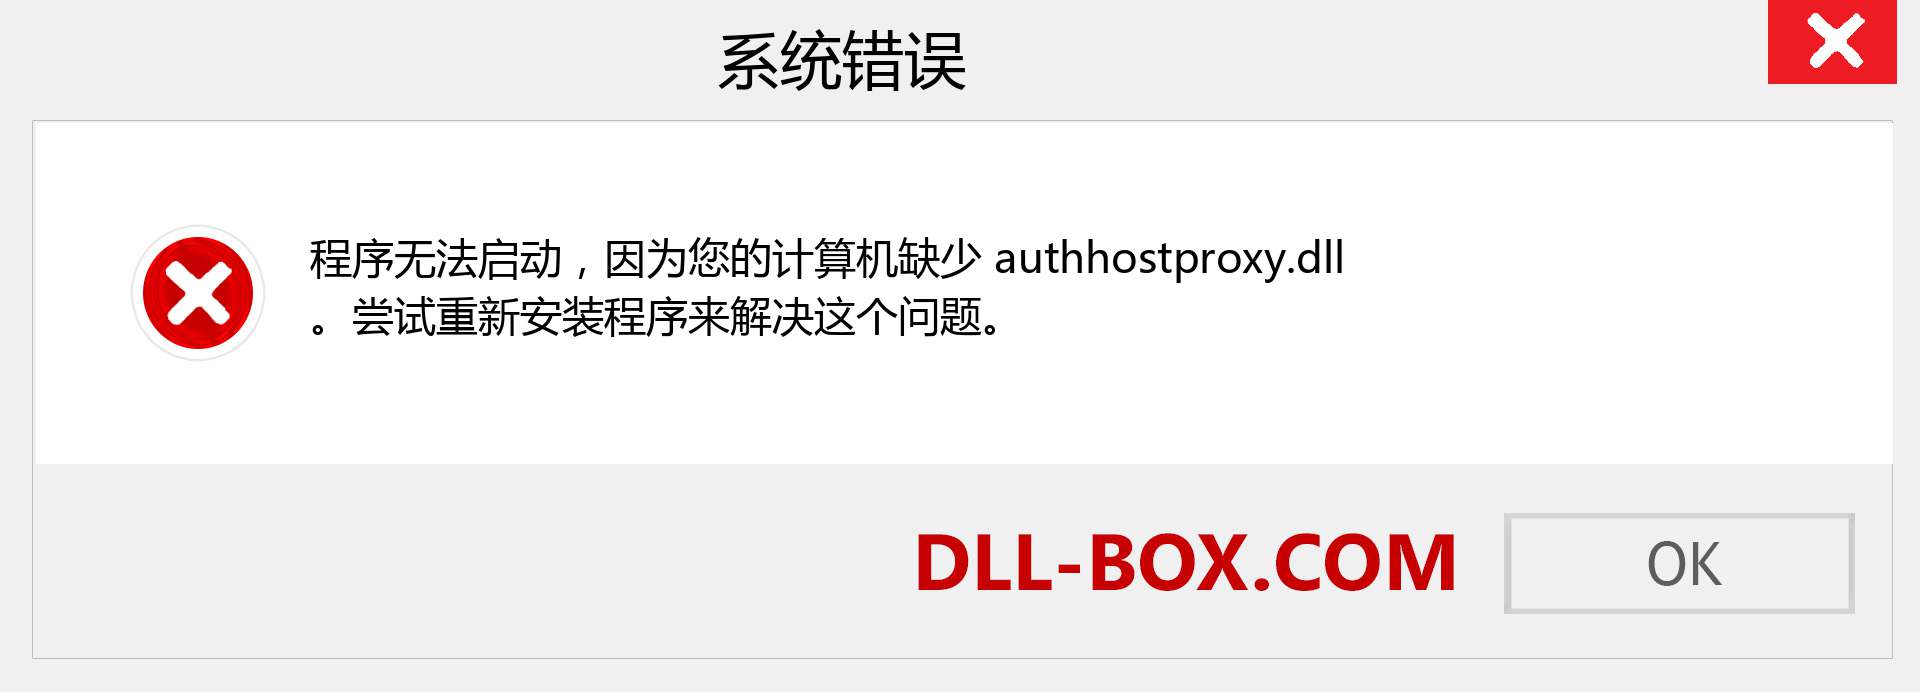 authhostproxy.dll 文件丢失？。 适用于 Windows 7、8、10 的下载 - 修复 Windows、照片、图像上的 authhostproxy dll 丢失错误